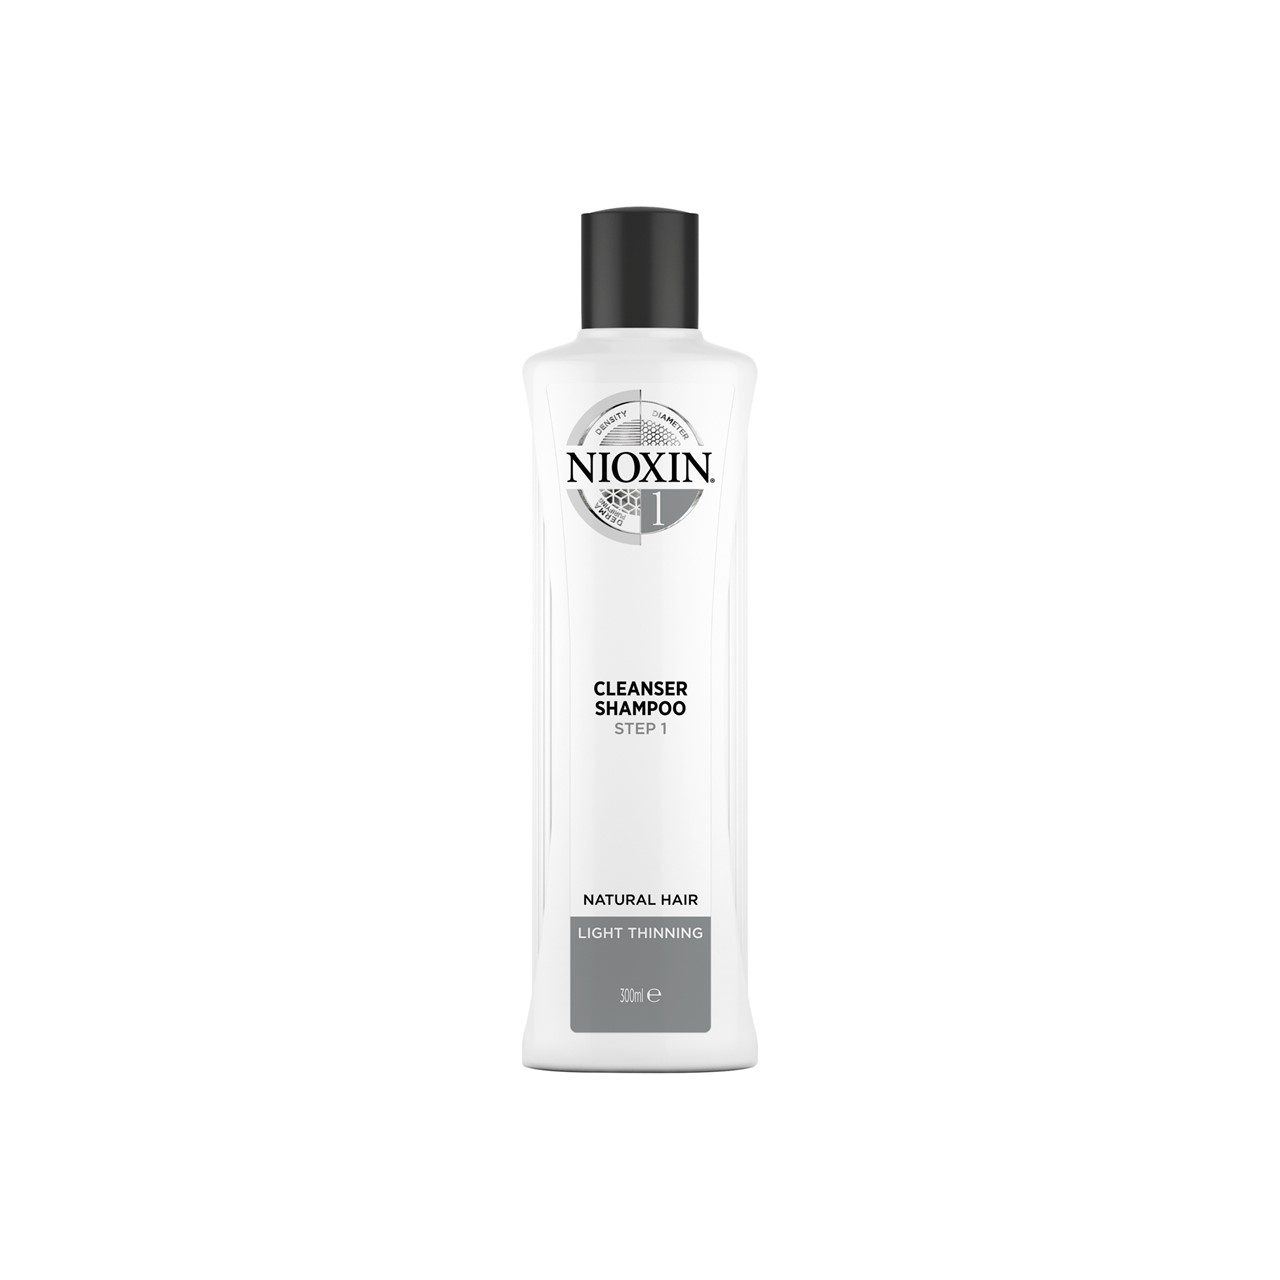 Nioxin System 1 Cleanser Shampoo 300ml (10.14fl oz)